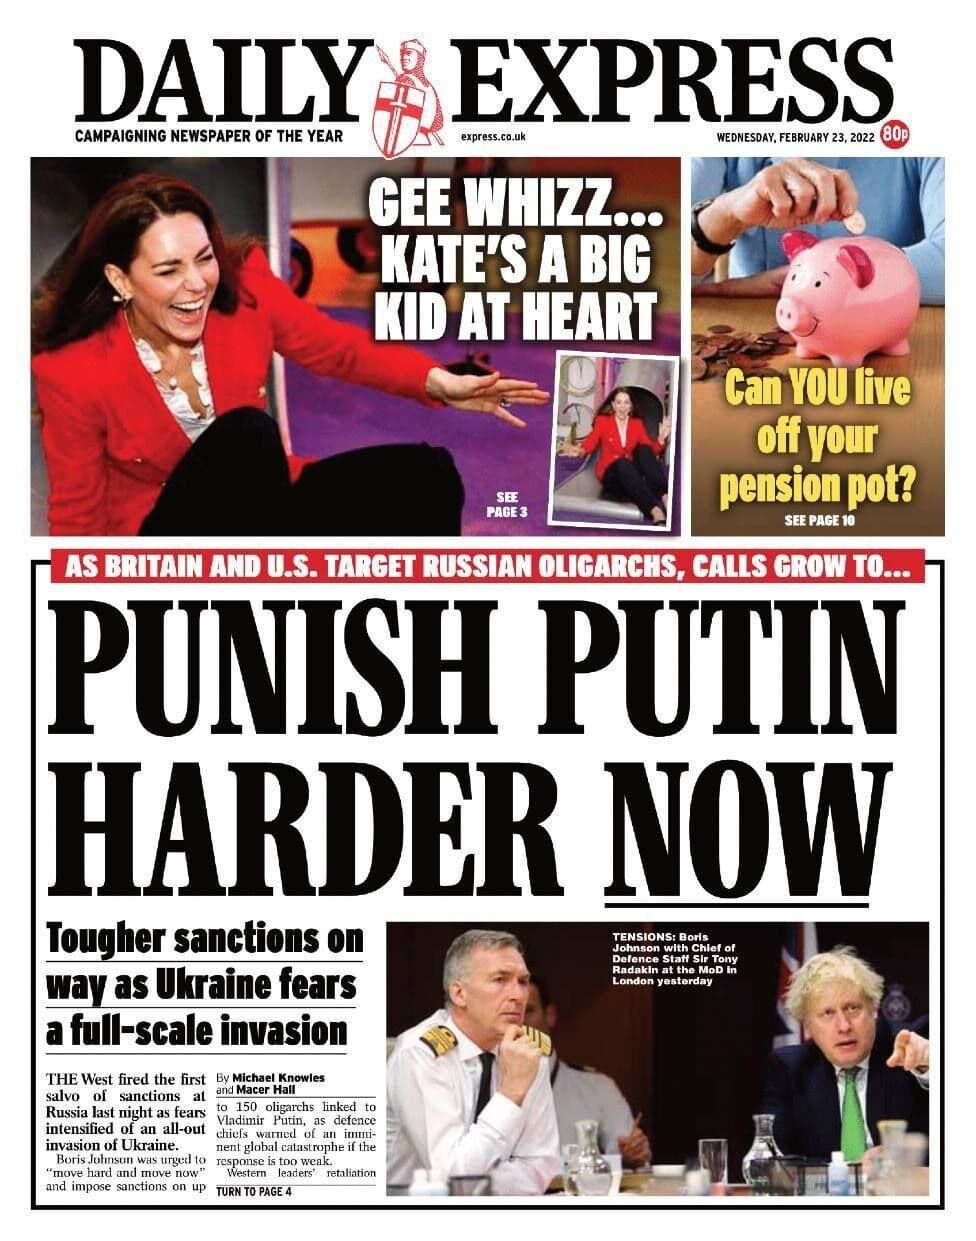 ЗМІ закликали покарати Путіна суворіше